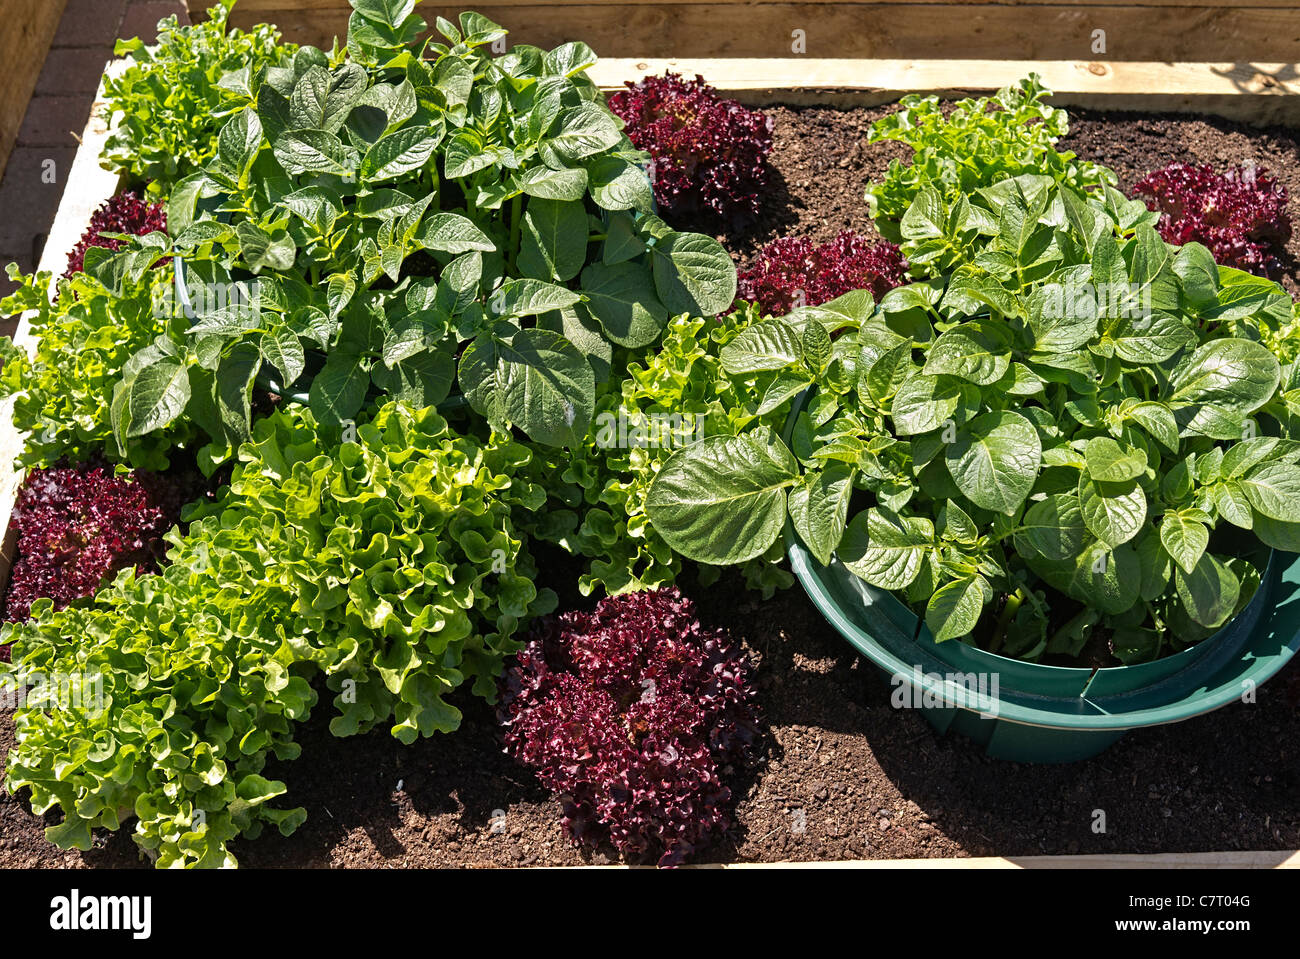 Salat und andere Gemüsen Pflanzen in einem kleinen Blumenkasten im Mai  Stockfotografie - Alamy